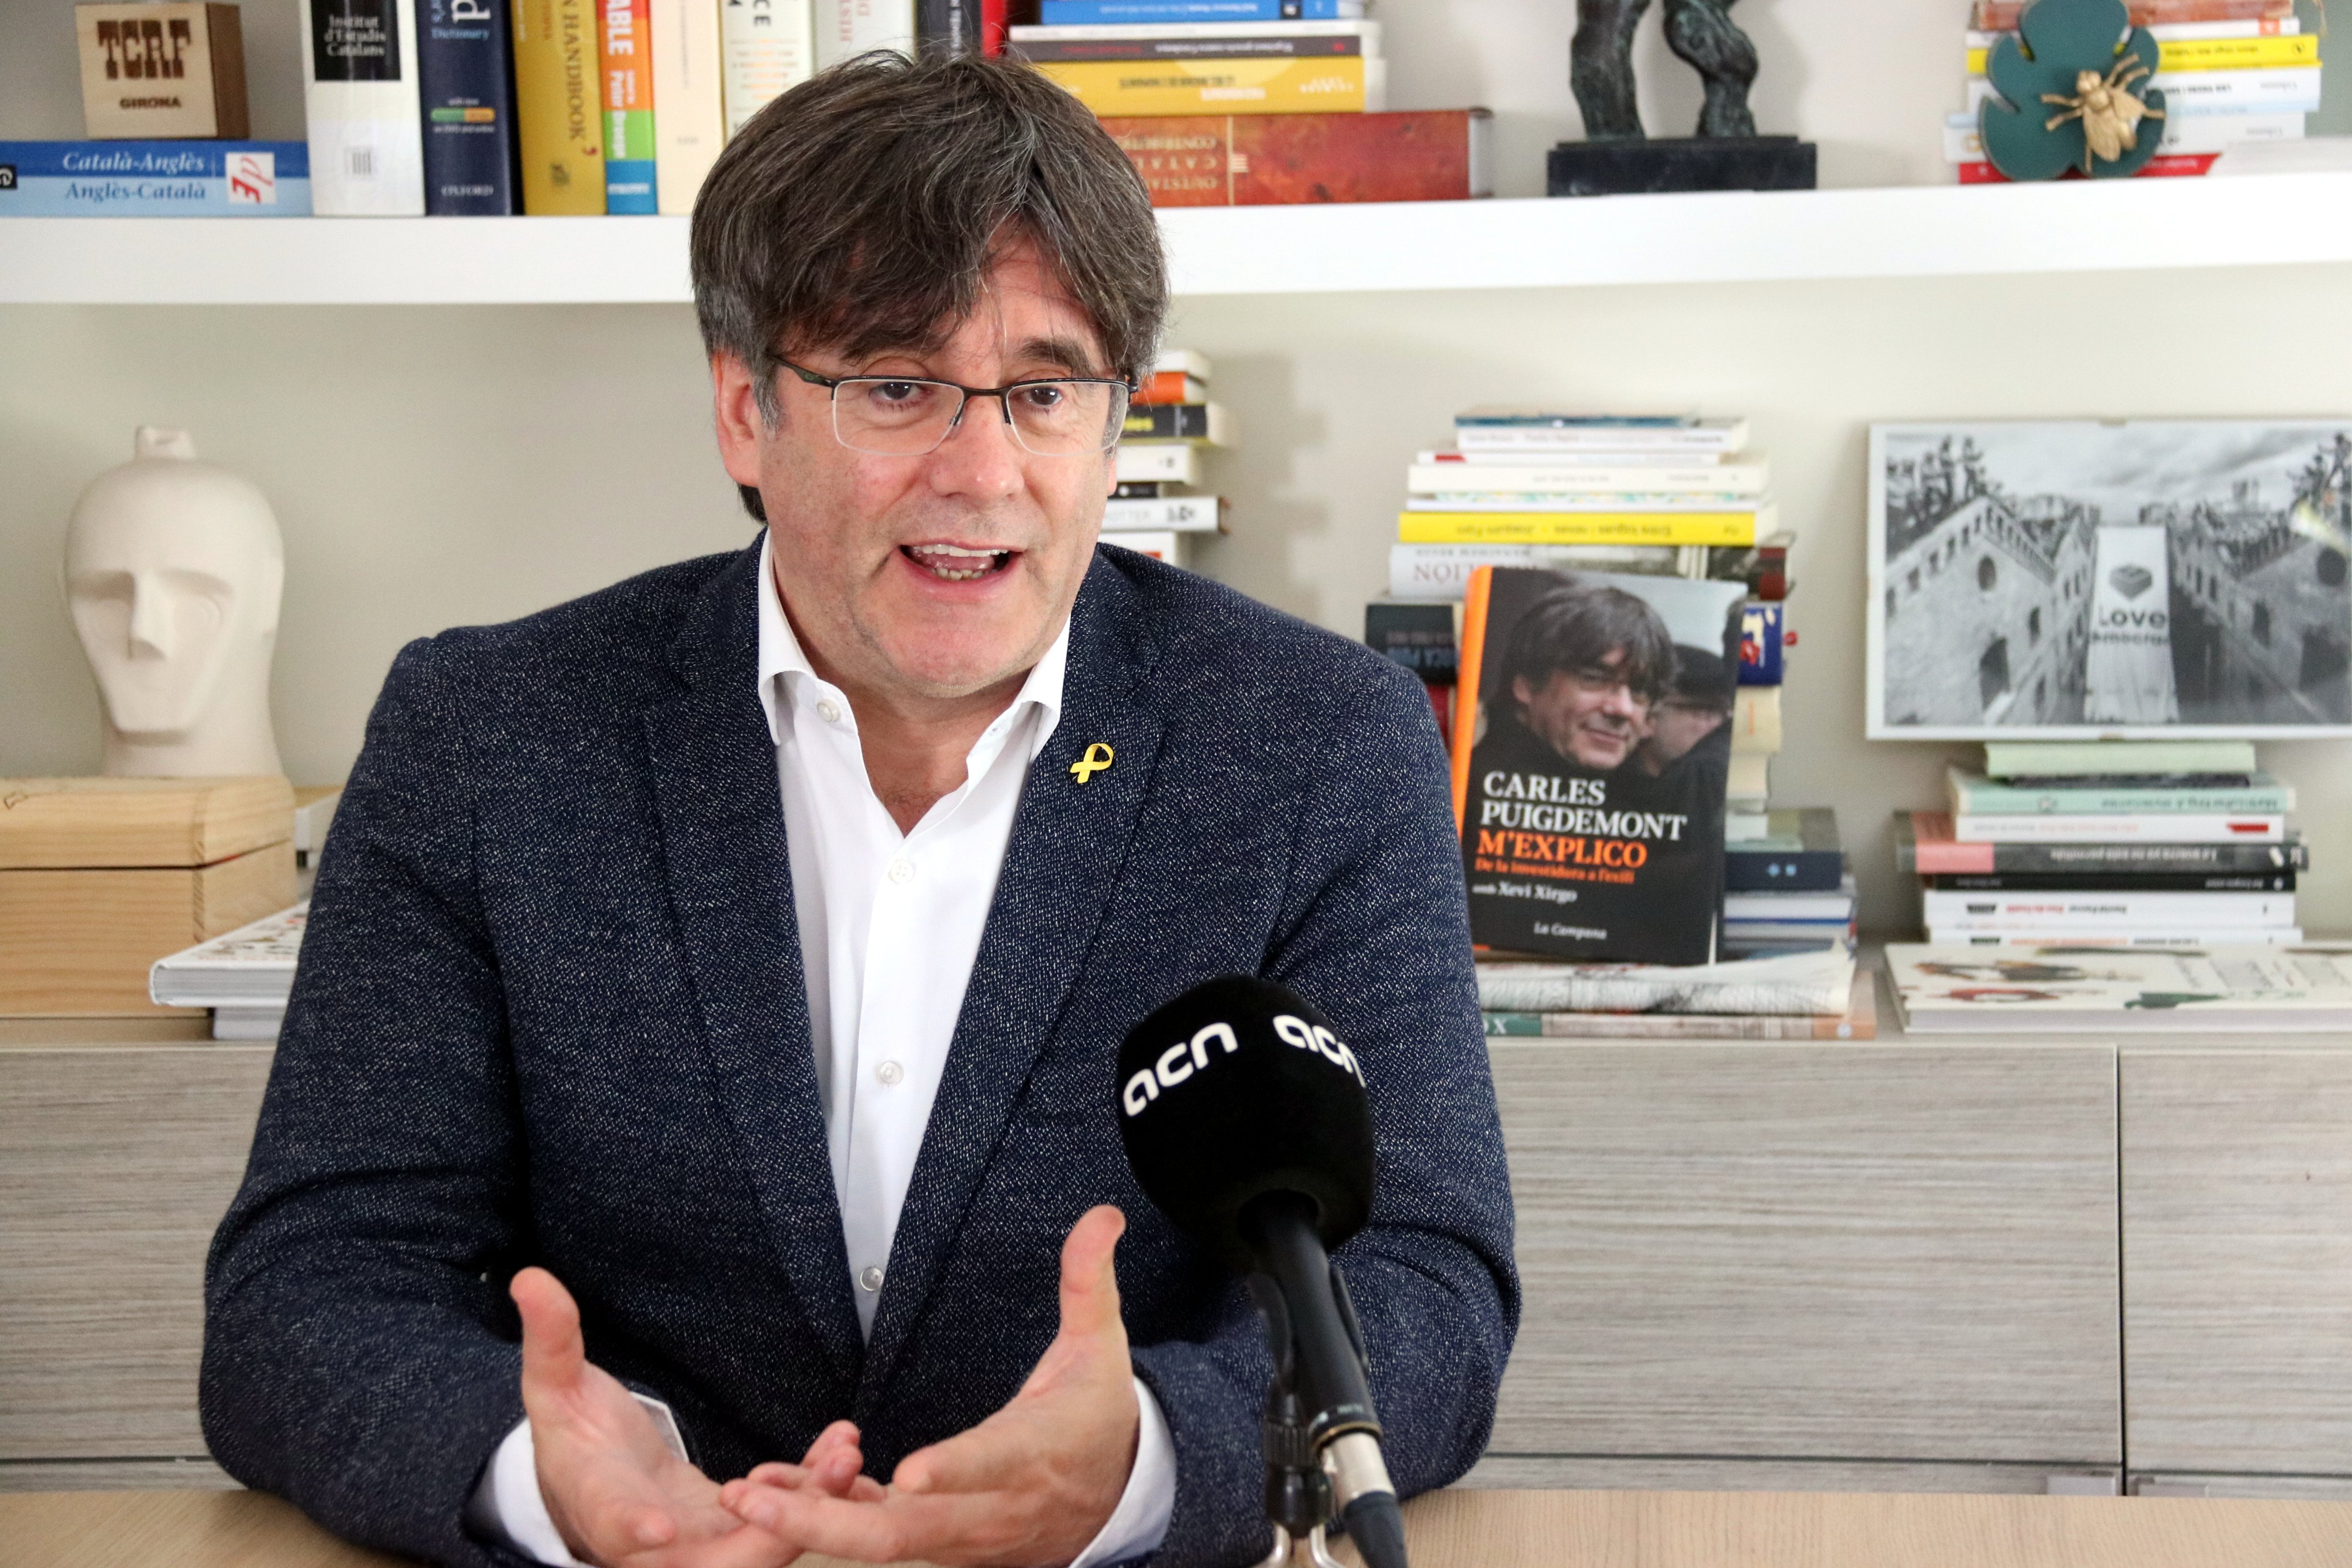 El llibre "M'explico" de Puigdemont arriba a la quarta edició en un mes